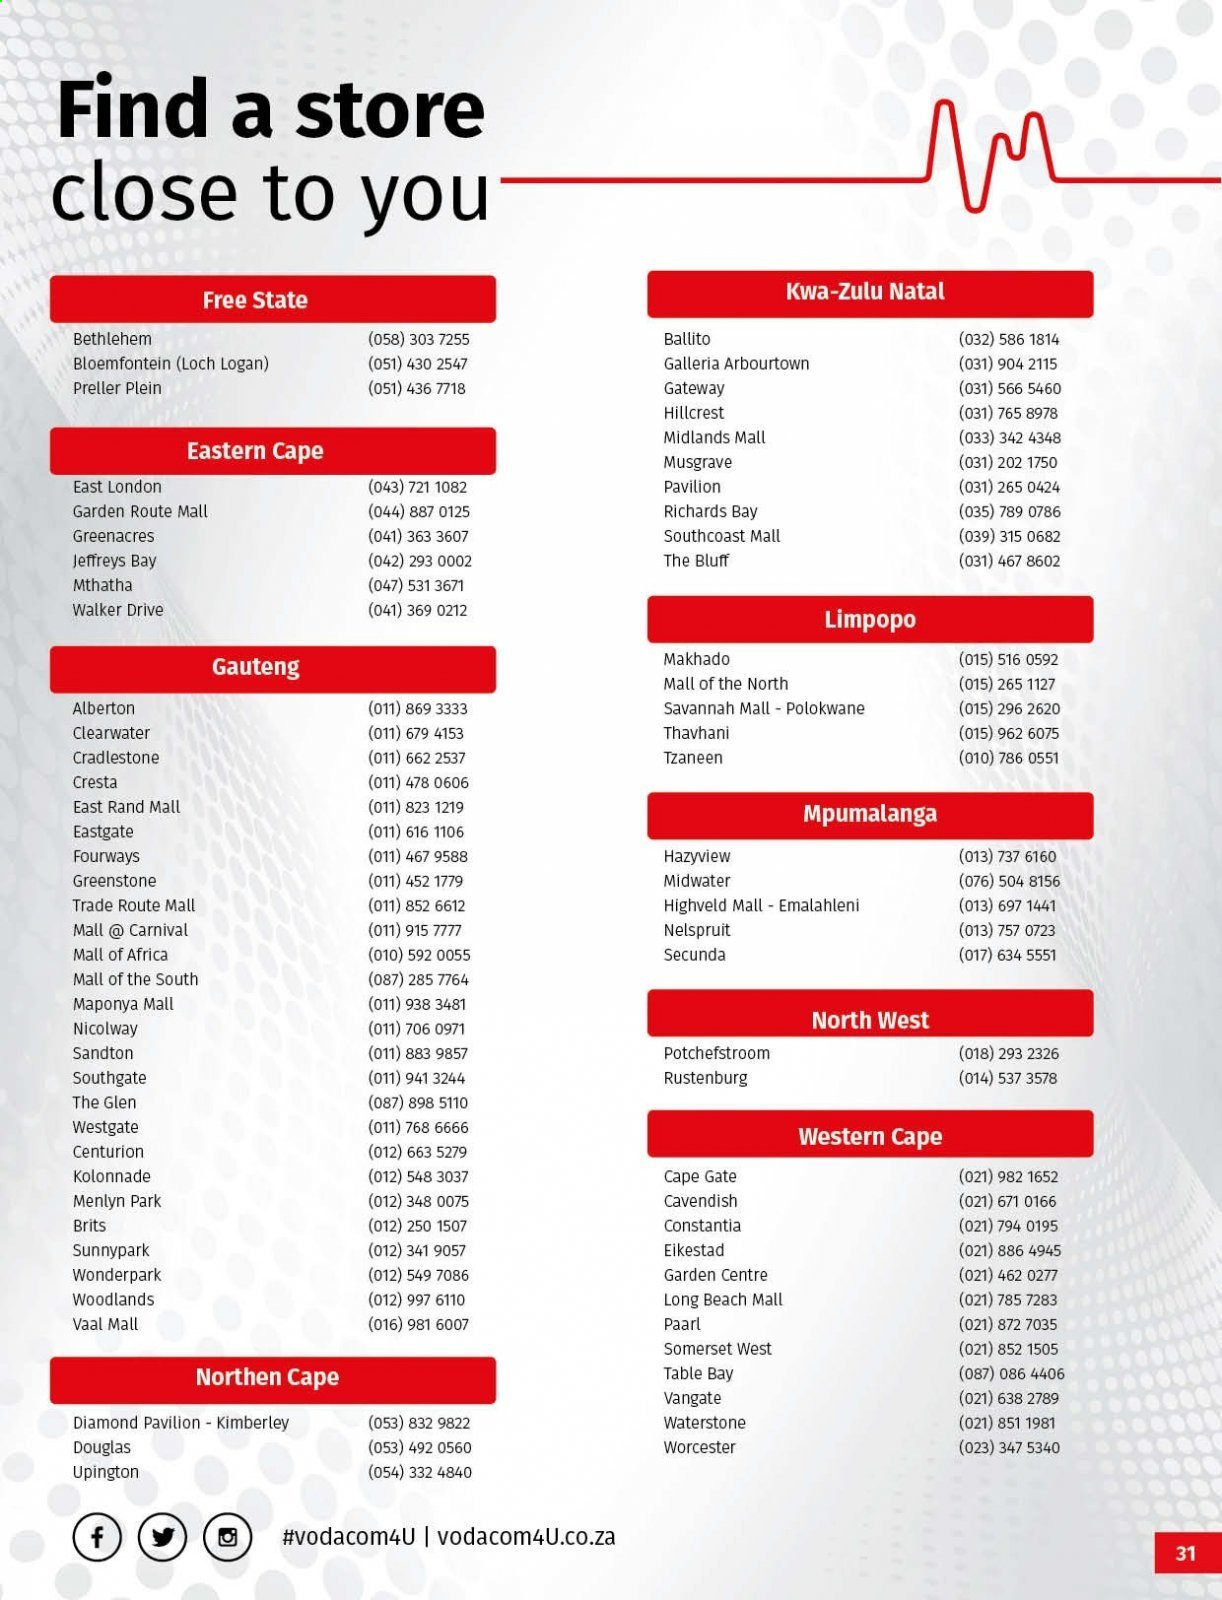 Vodacom specials - 08.06.2021 - 09.06.2021. 